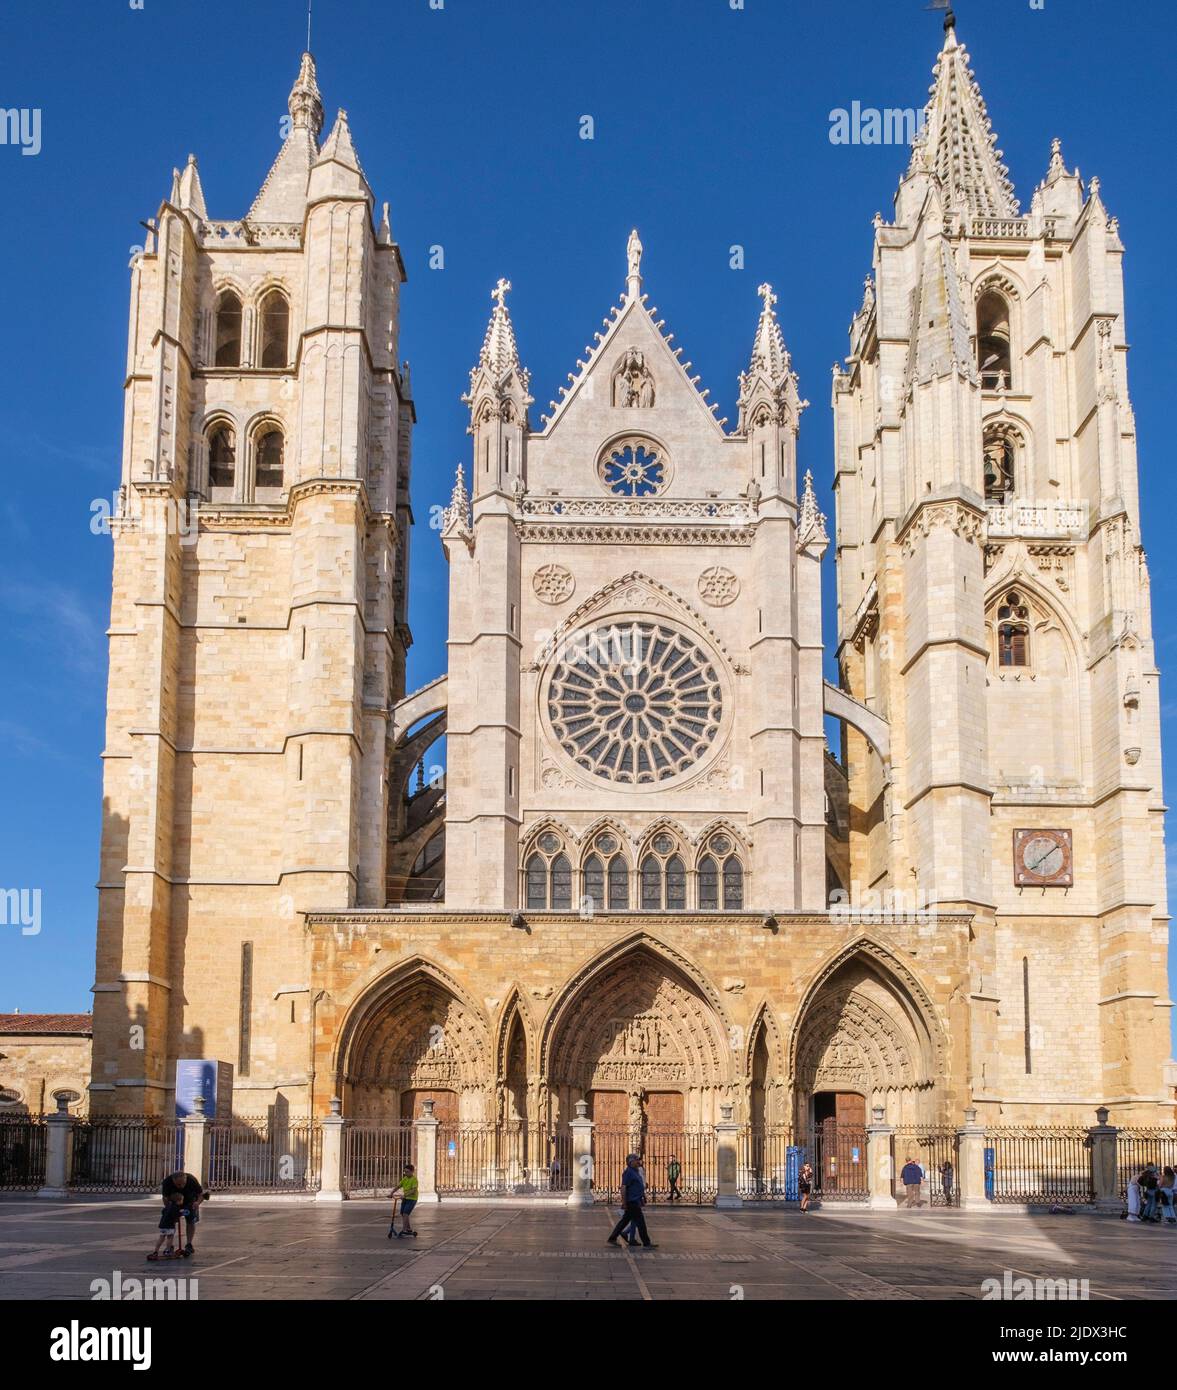 Espagne, Leon, Castilla y Leon. Cathédrale de Santa Maria. Gothique, 13th siècle. Banque D'Images